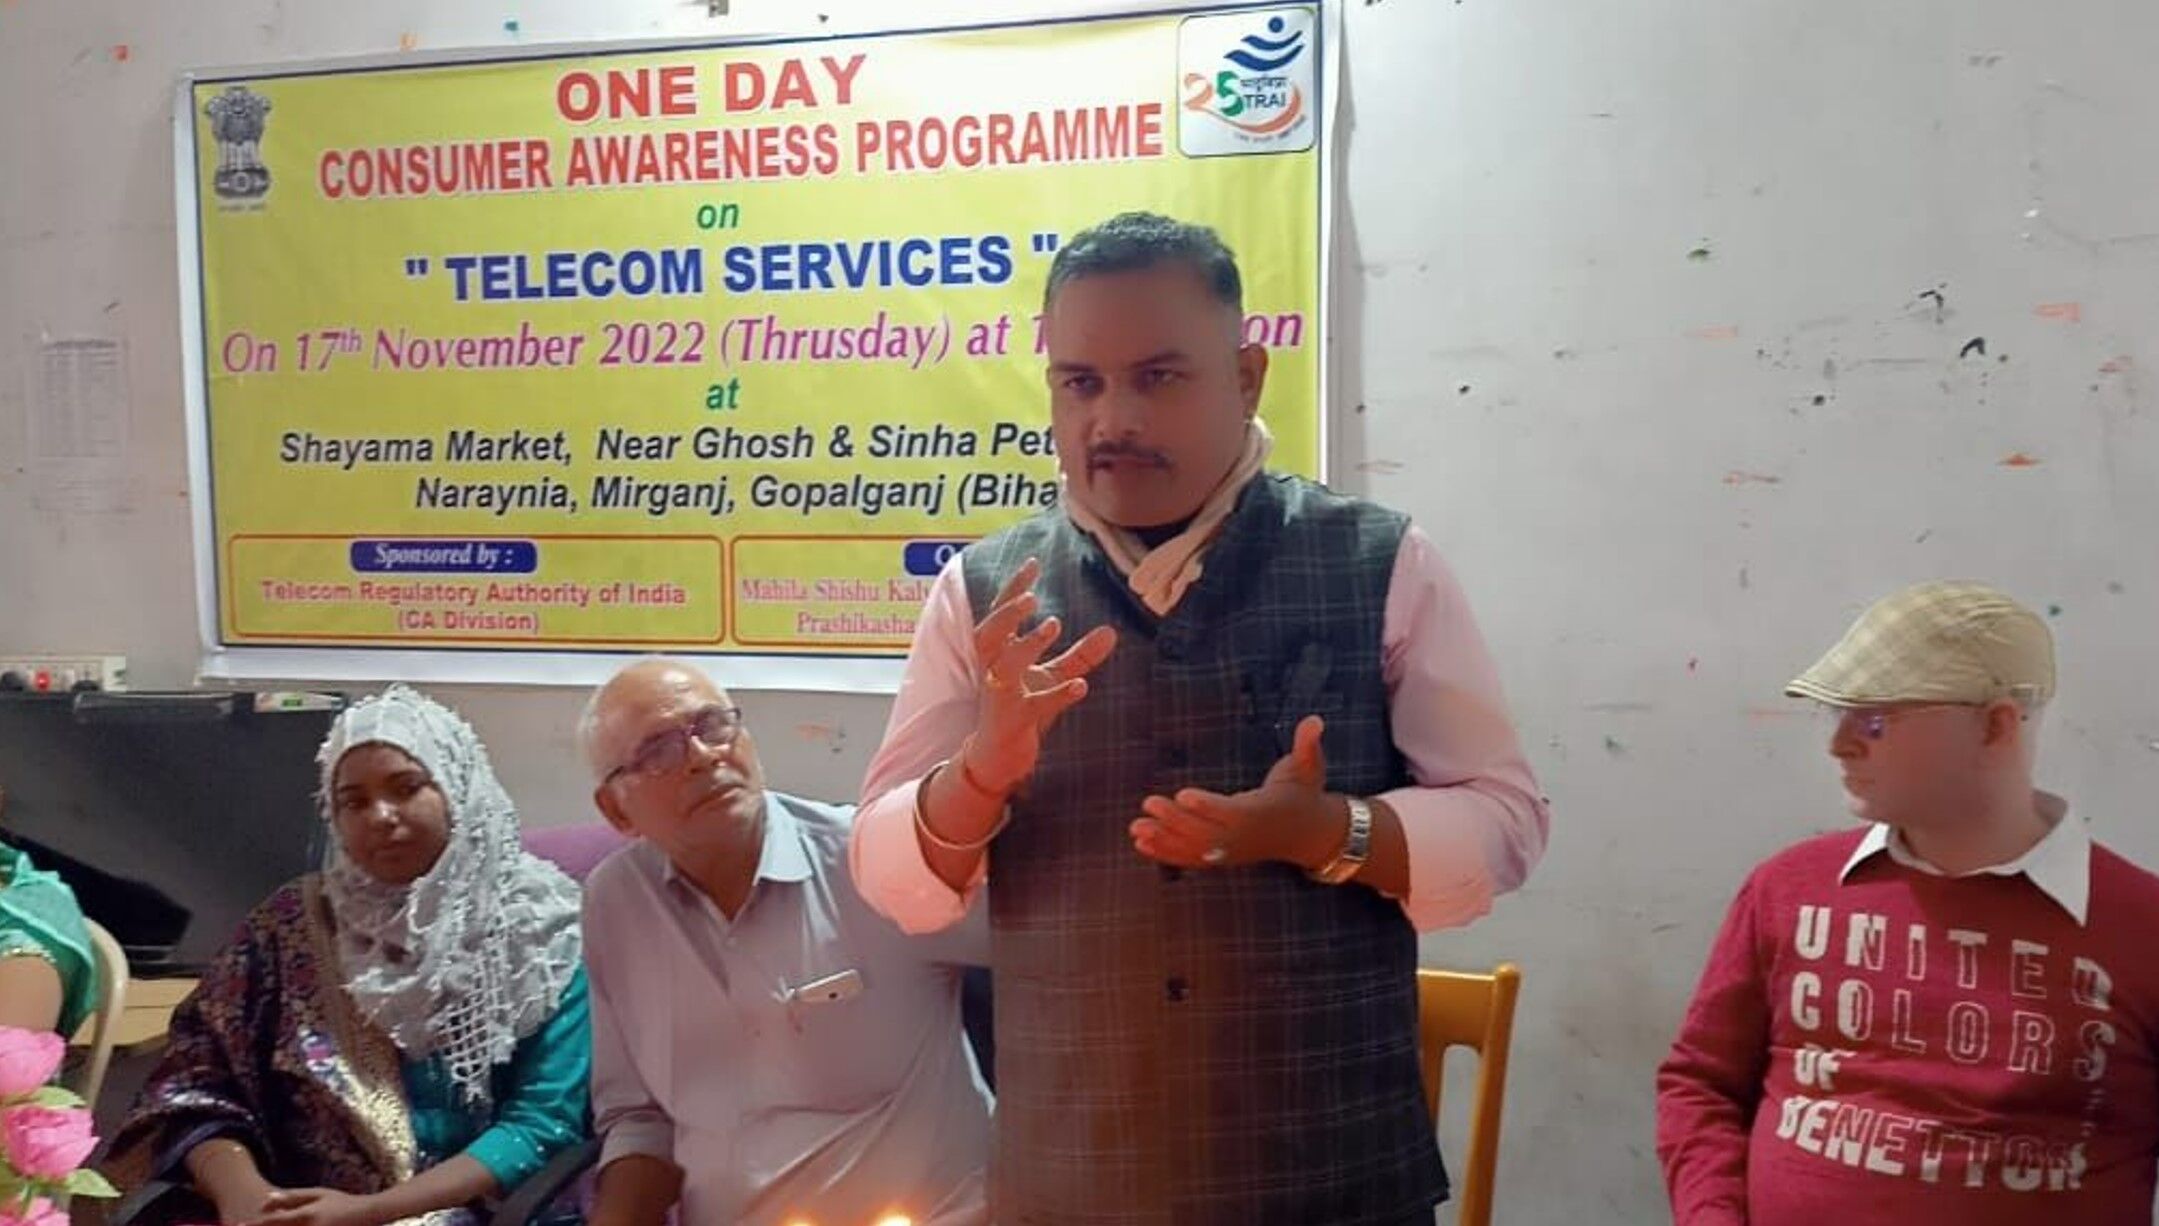 Telecom Regulatory Authority of India: भारतीय दूरसंचार की ओर से जागरूकता कार्यक्रम आयोजित, अपने अधिकारों के प्रति सचेत रहें टेलिकॉम उपभोक्ता